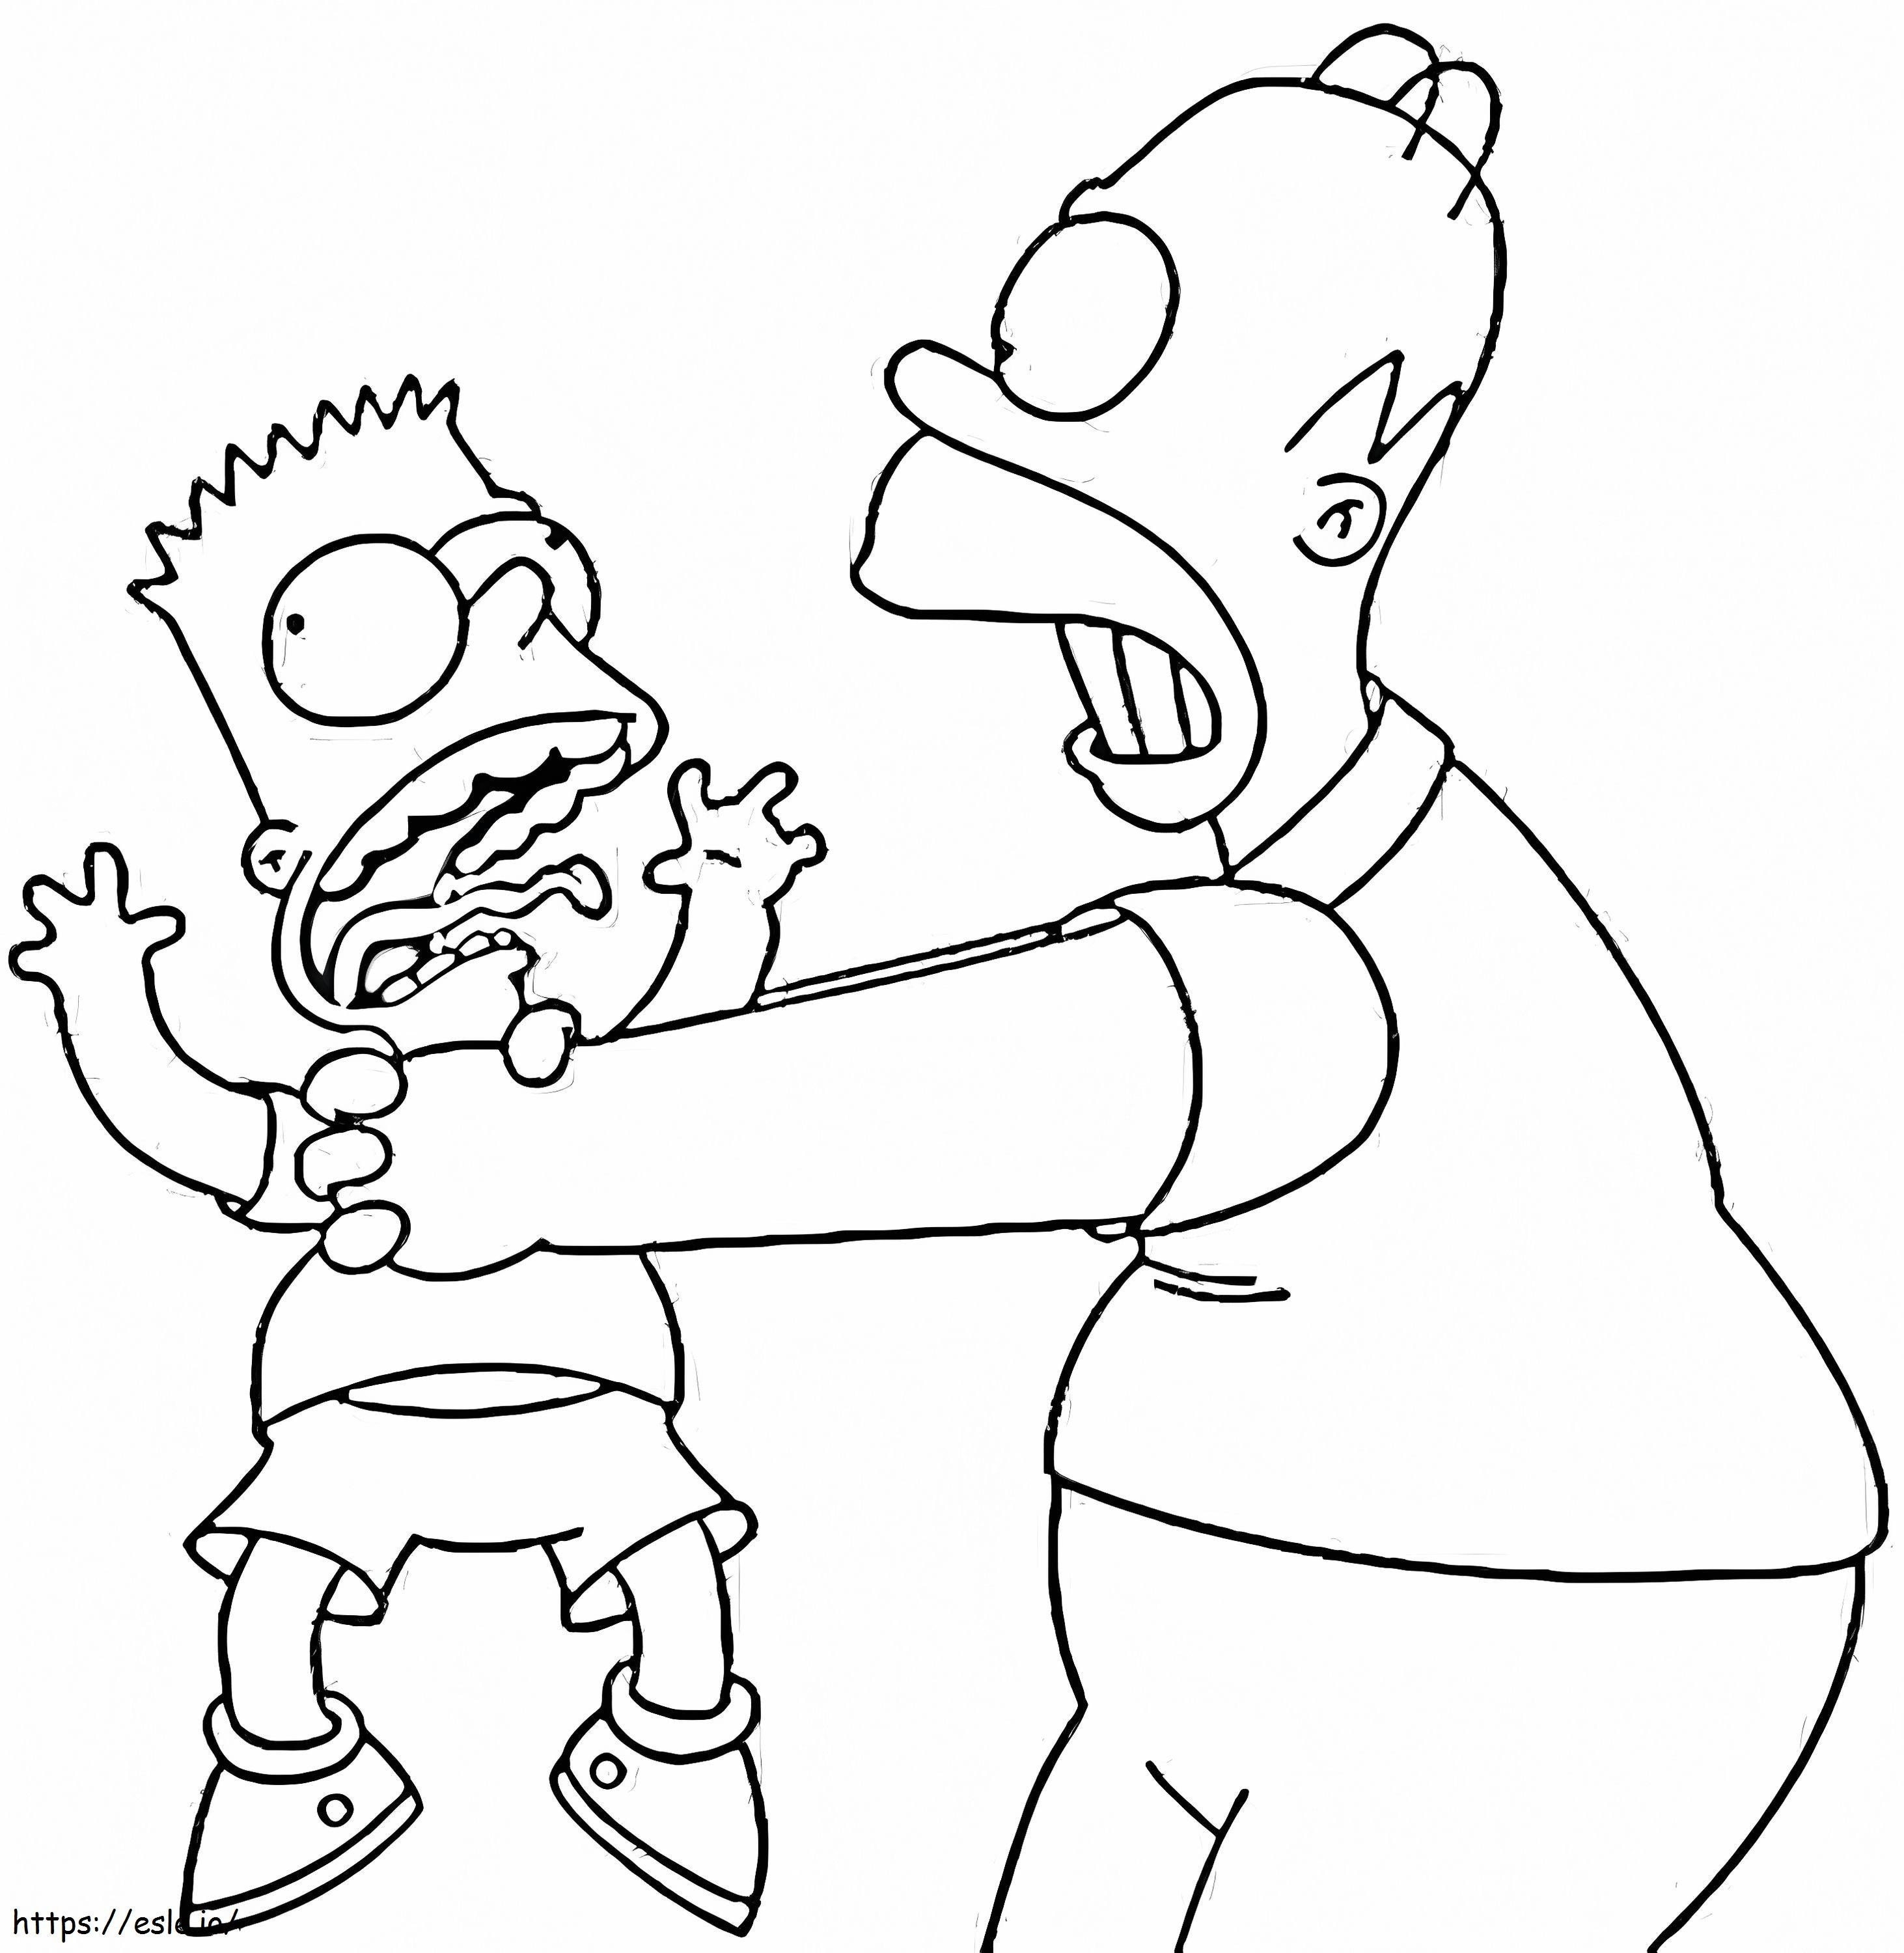 Bart und Homer Simpson ausmalbilder